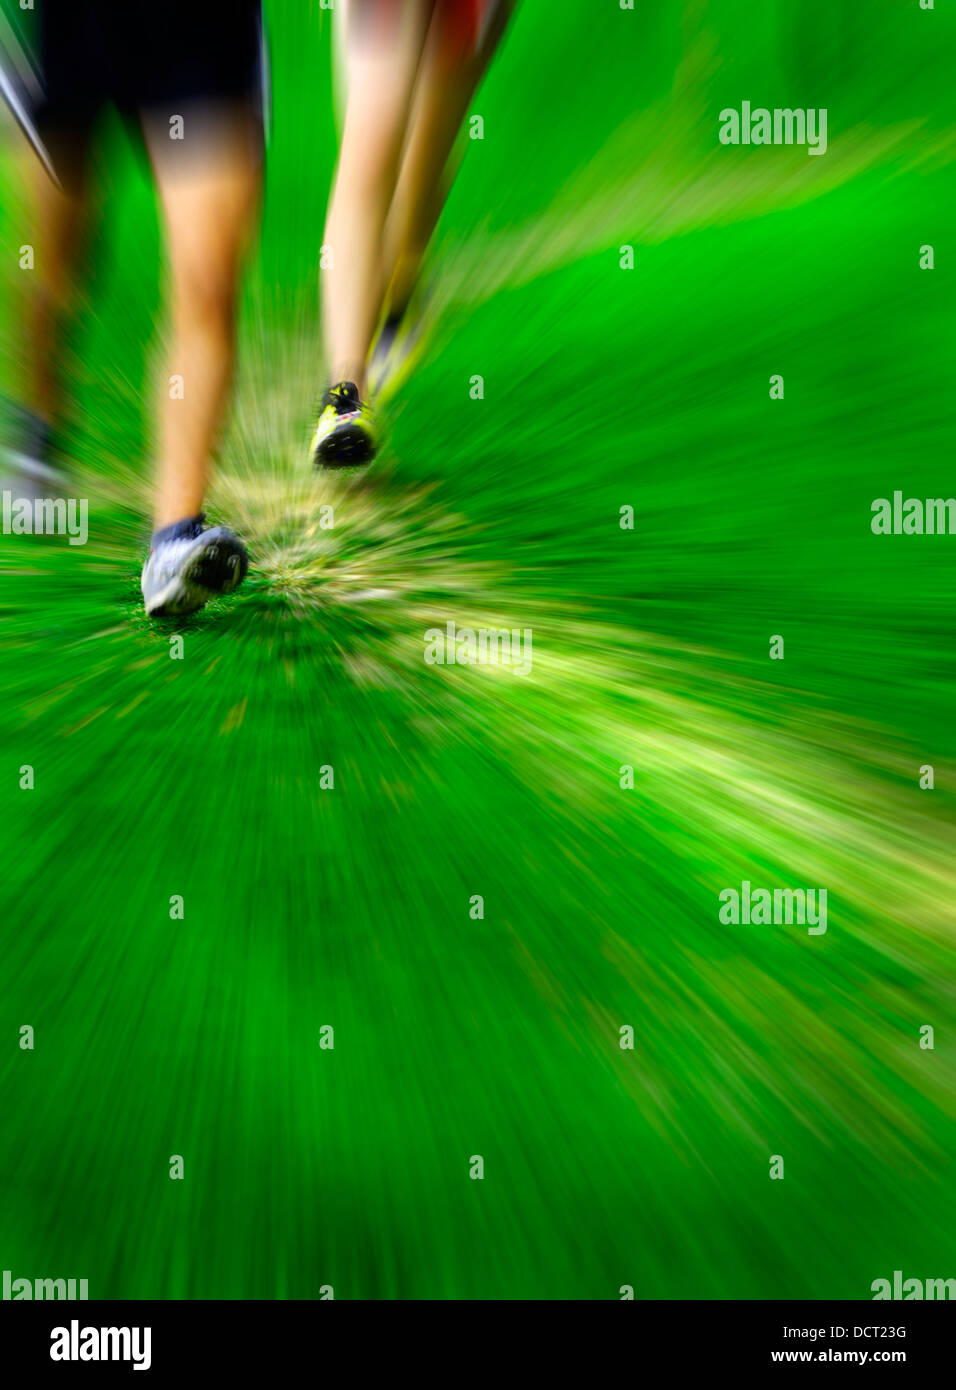 Detalle de zoom sobre corredores corriendo una carrera en curso de hierba Foto de stock